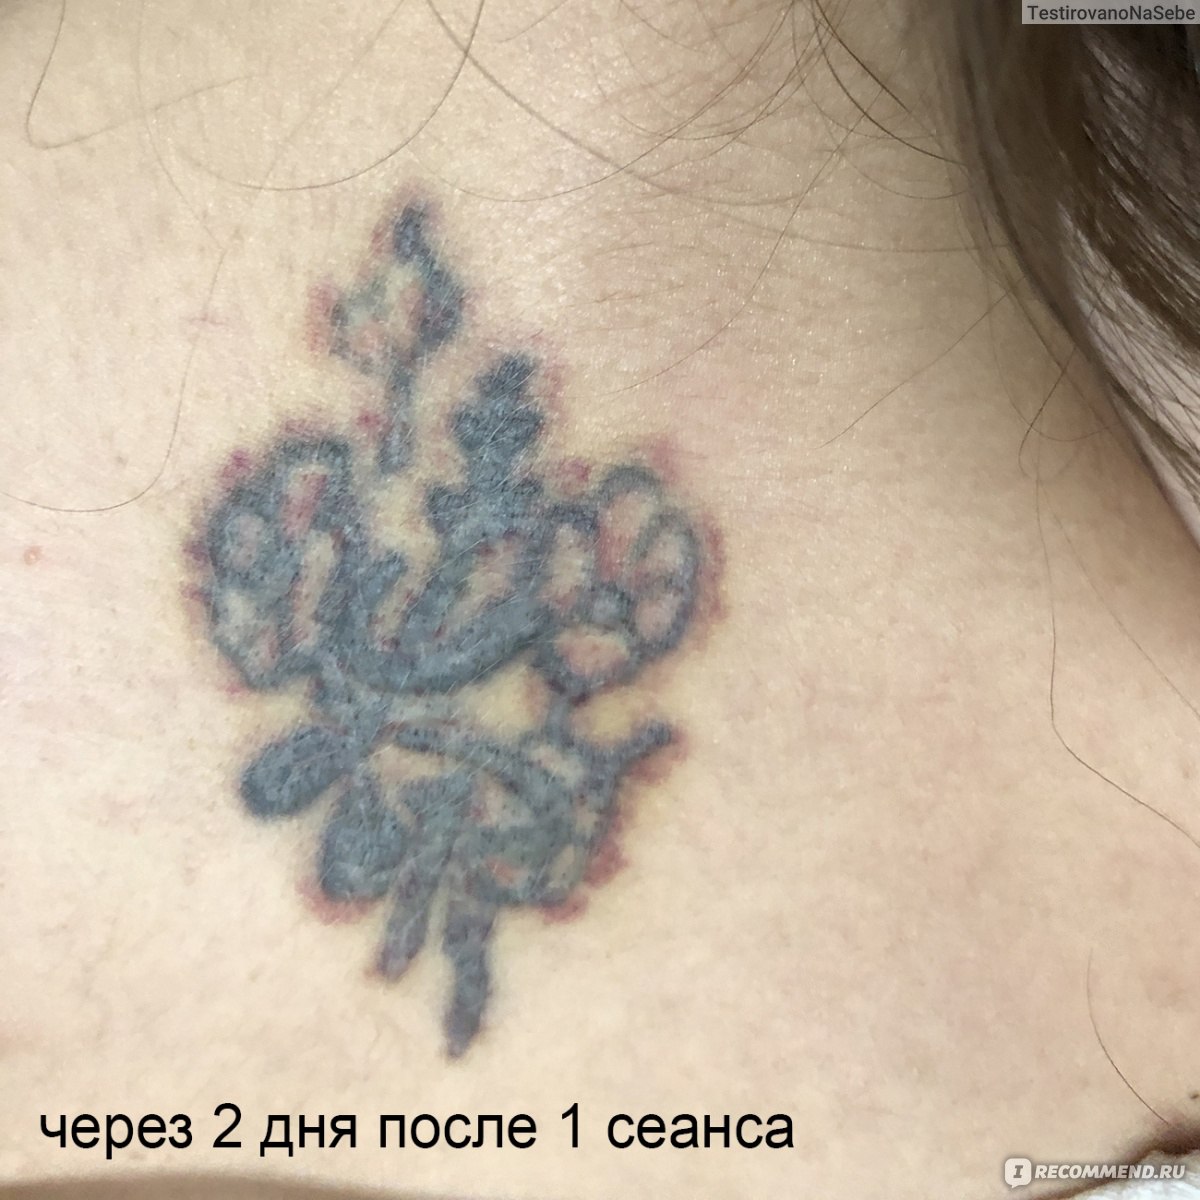 Лазерное удаление татуировок и перманентного макияжа в Минске